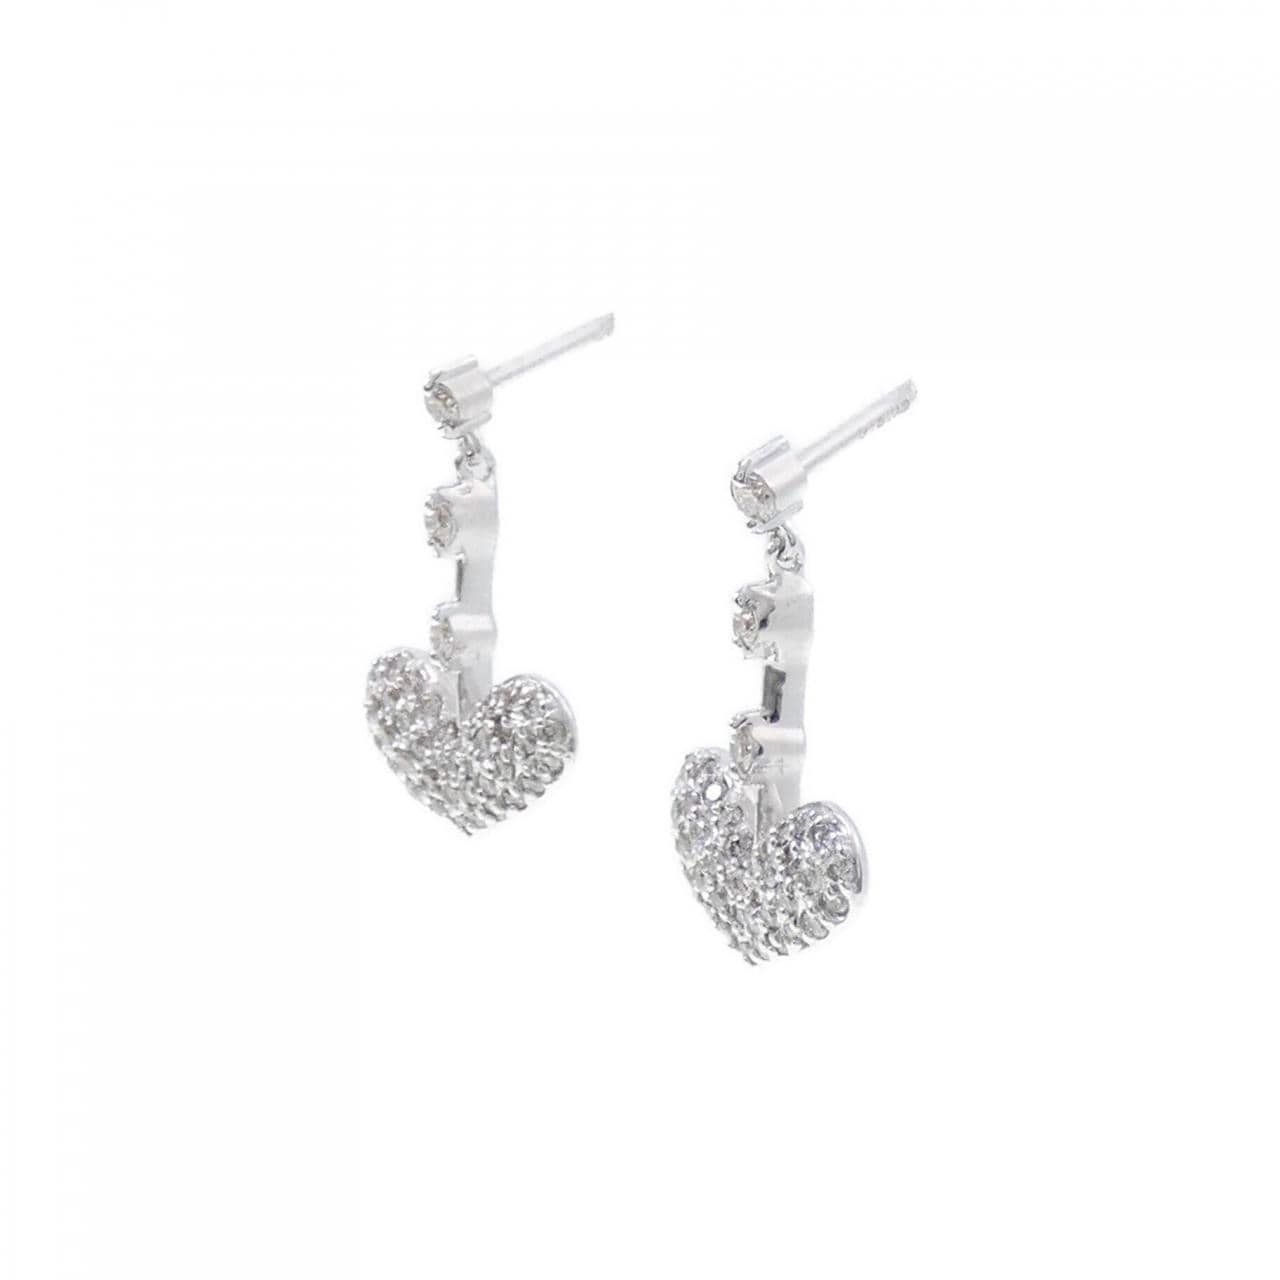 K18WG pave heart Diamond earrings 0.50CT